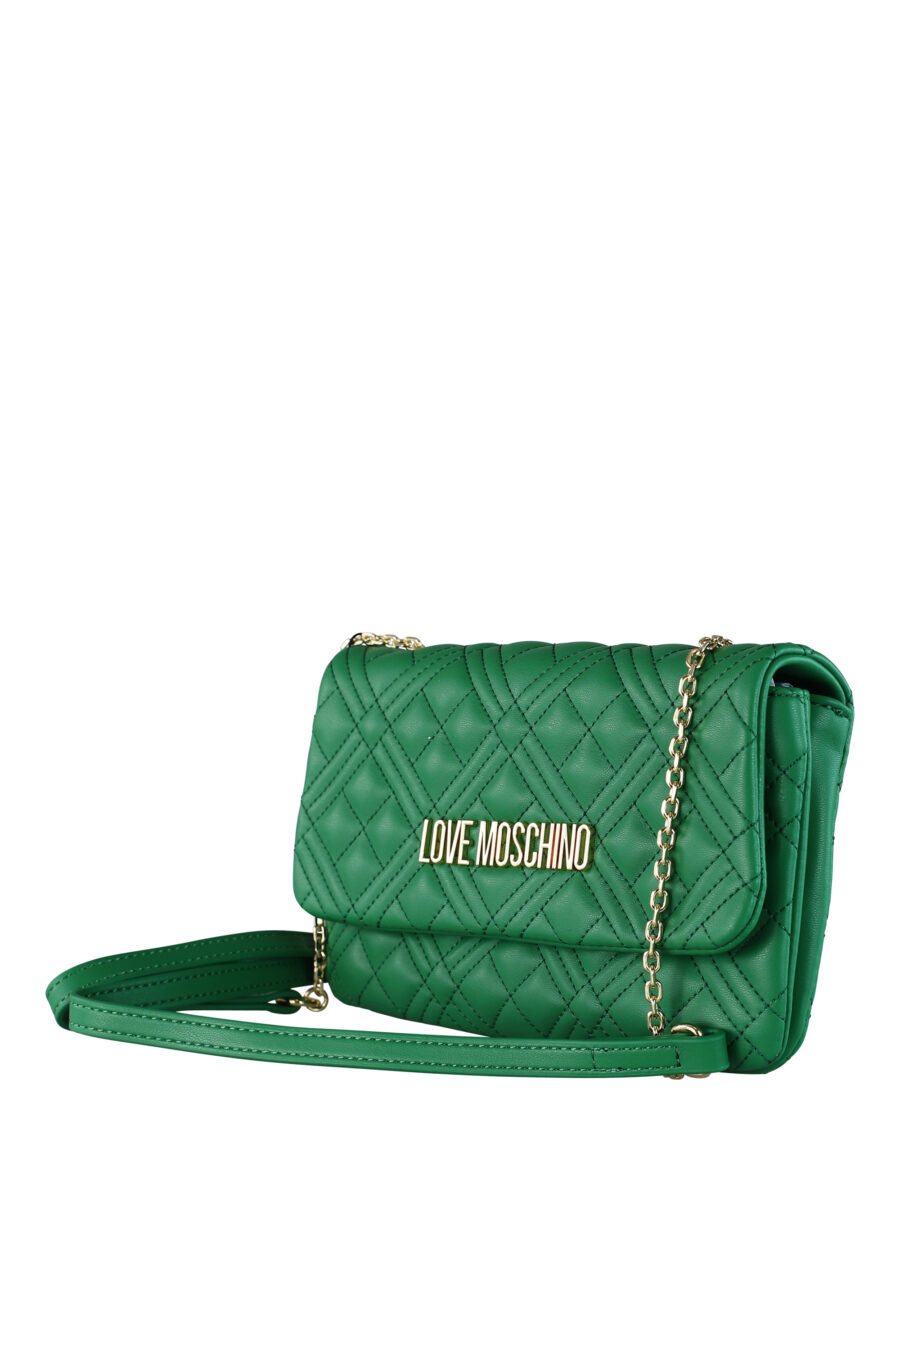 Rectangular green shoulder bag with gold lettering logo - IMG 0428